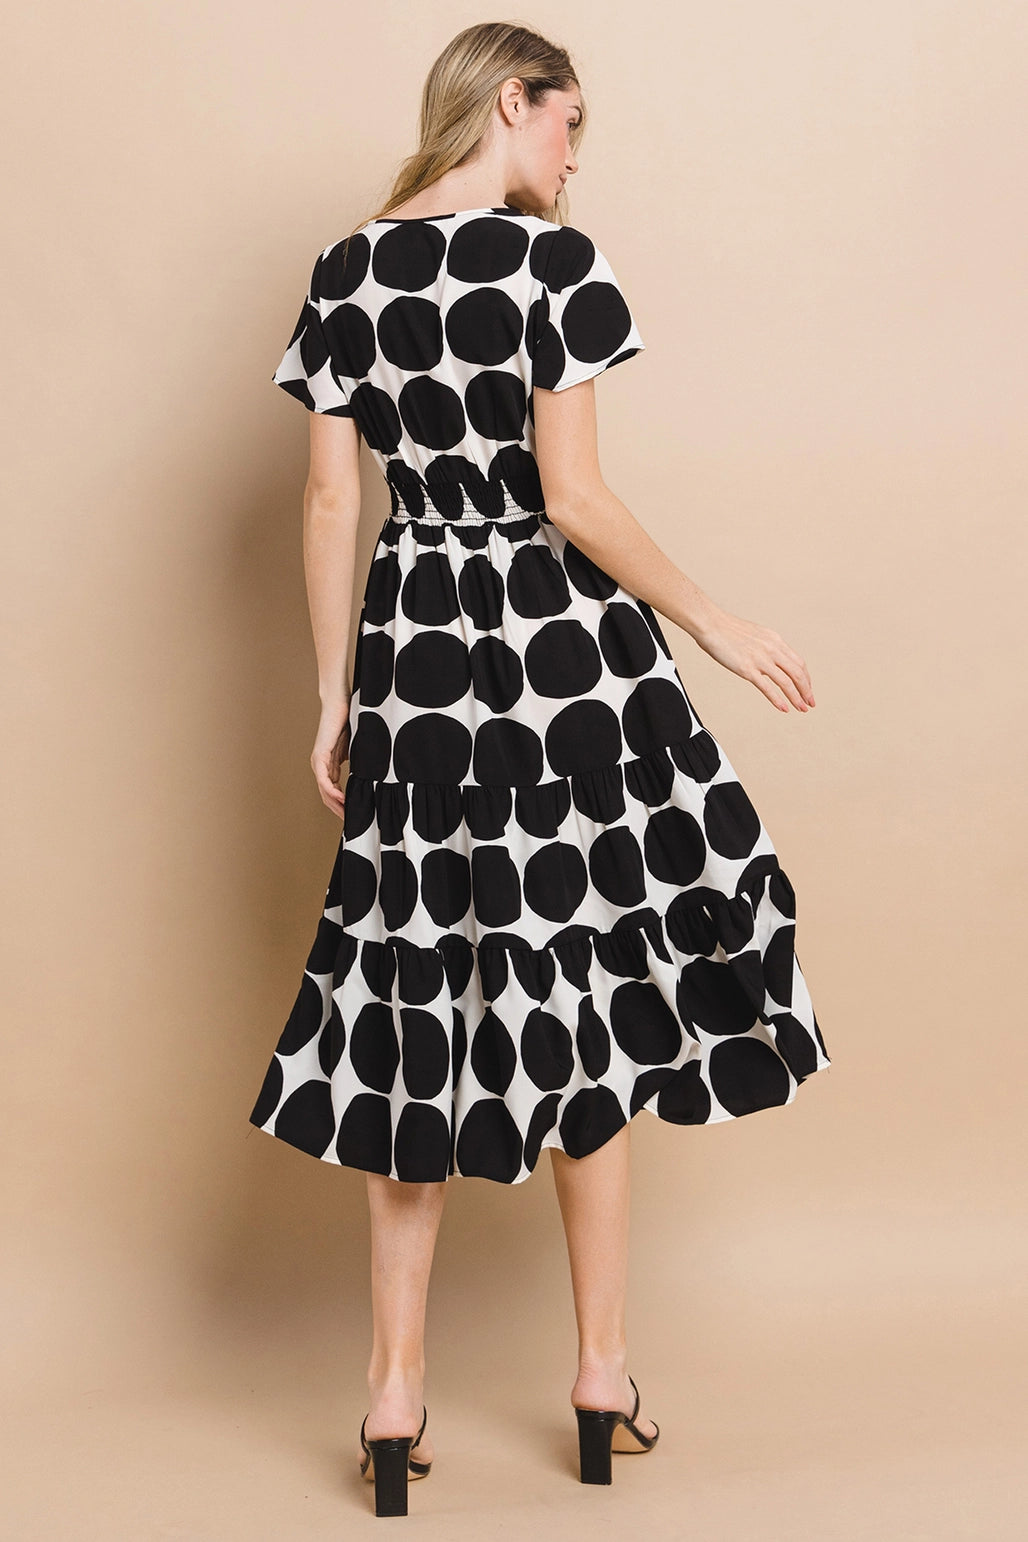 Gretel Black & White Polka Dots Dress